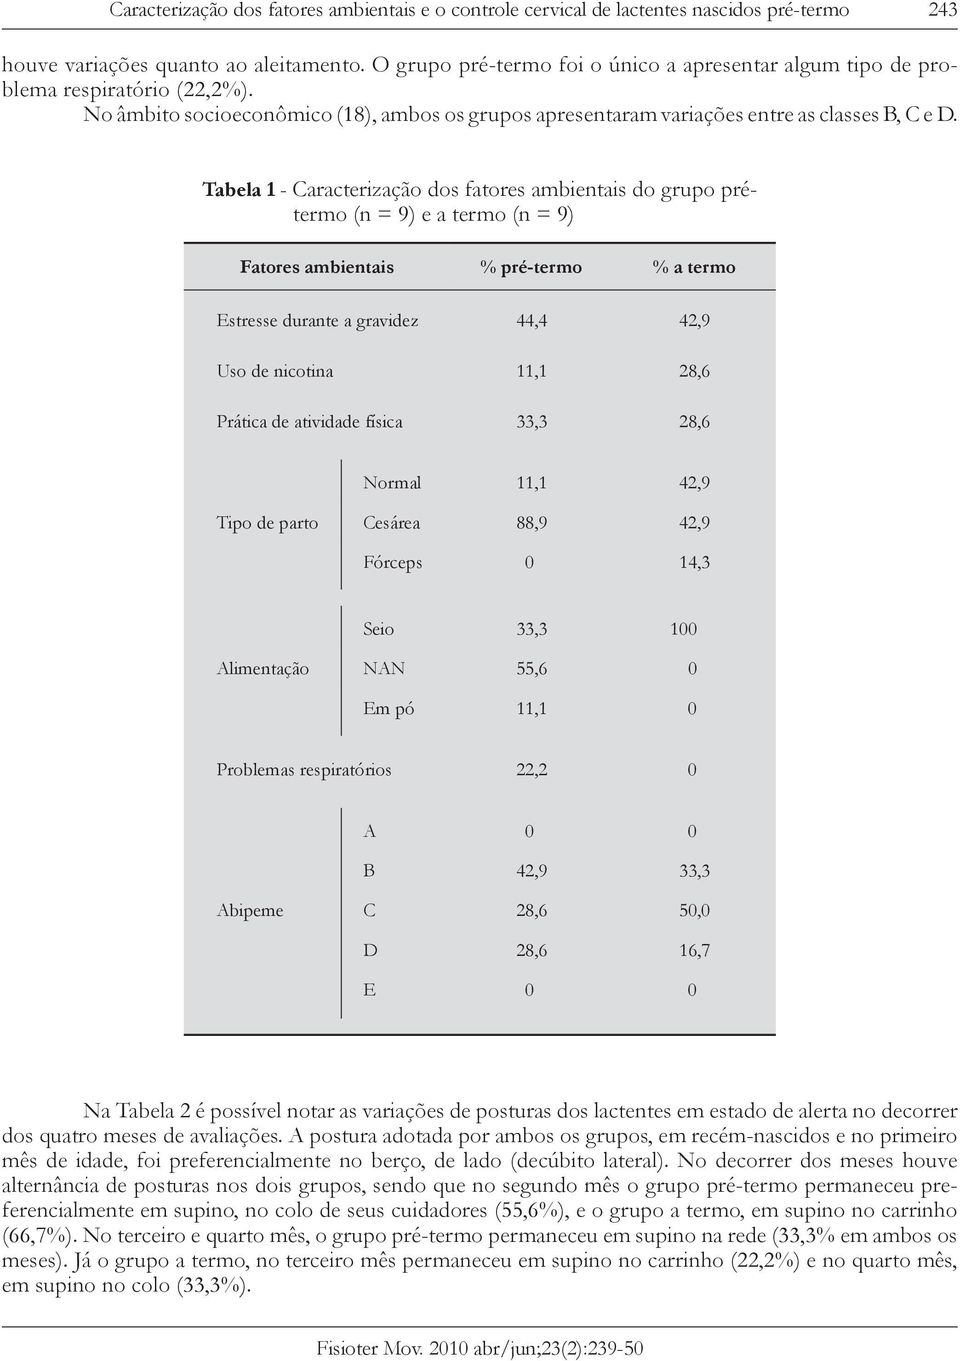 Tabela 1 - Caracterização dos fatores ambientais do grupo pré (n = 9) e a (n = 9) Fatores ambientais % pré- Estresse durante a gravidez 44,4 42,9 Uso de nicotina 11,1 28,6 Prática de atividade física